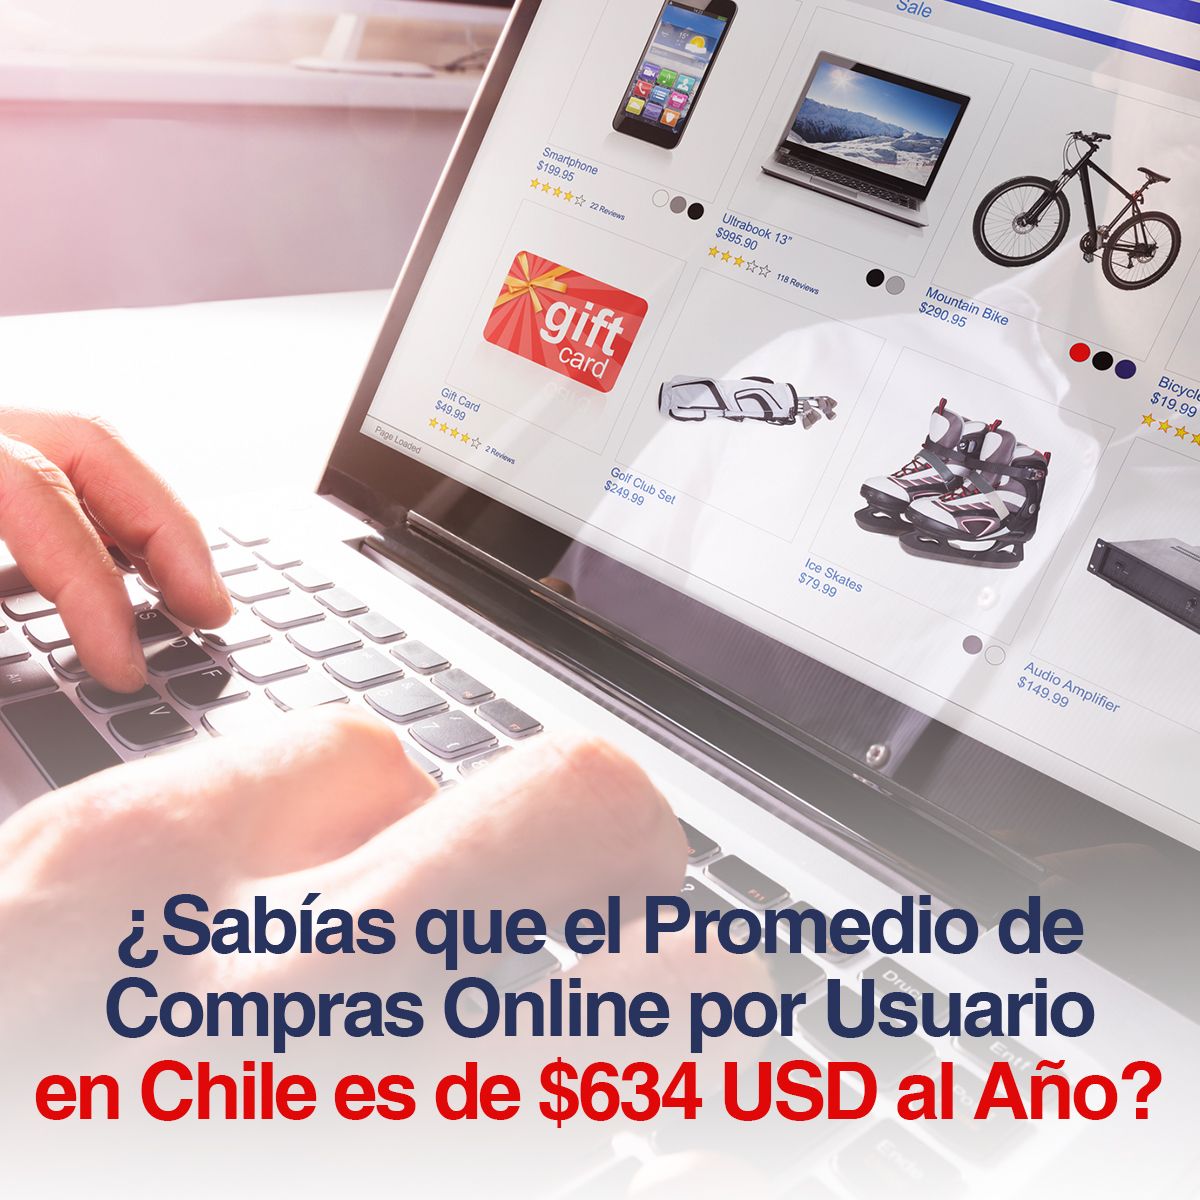 ¿Sabías que el Promedio de Compras Online por Usuario en Chile es de $634 USD al Año?